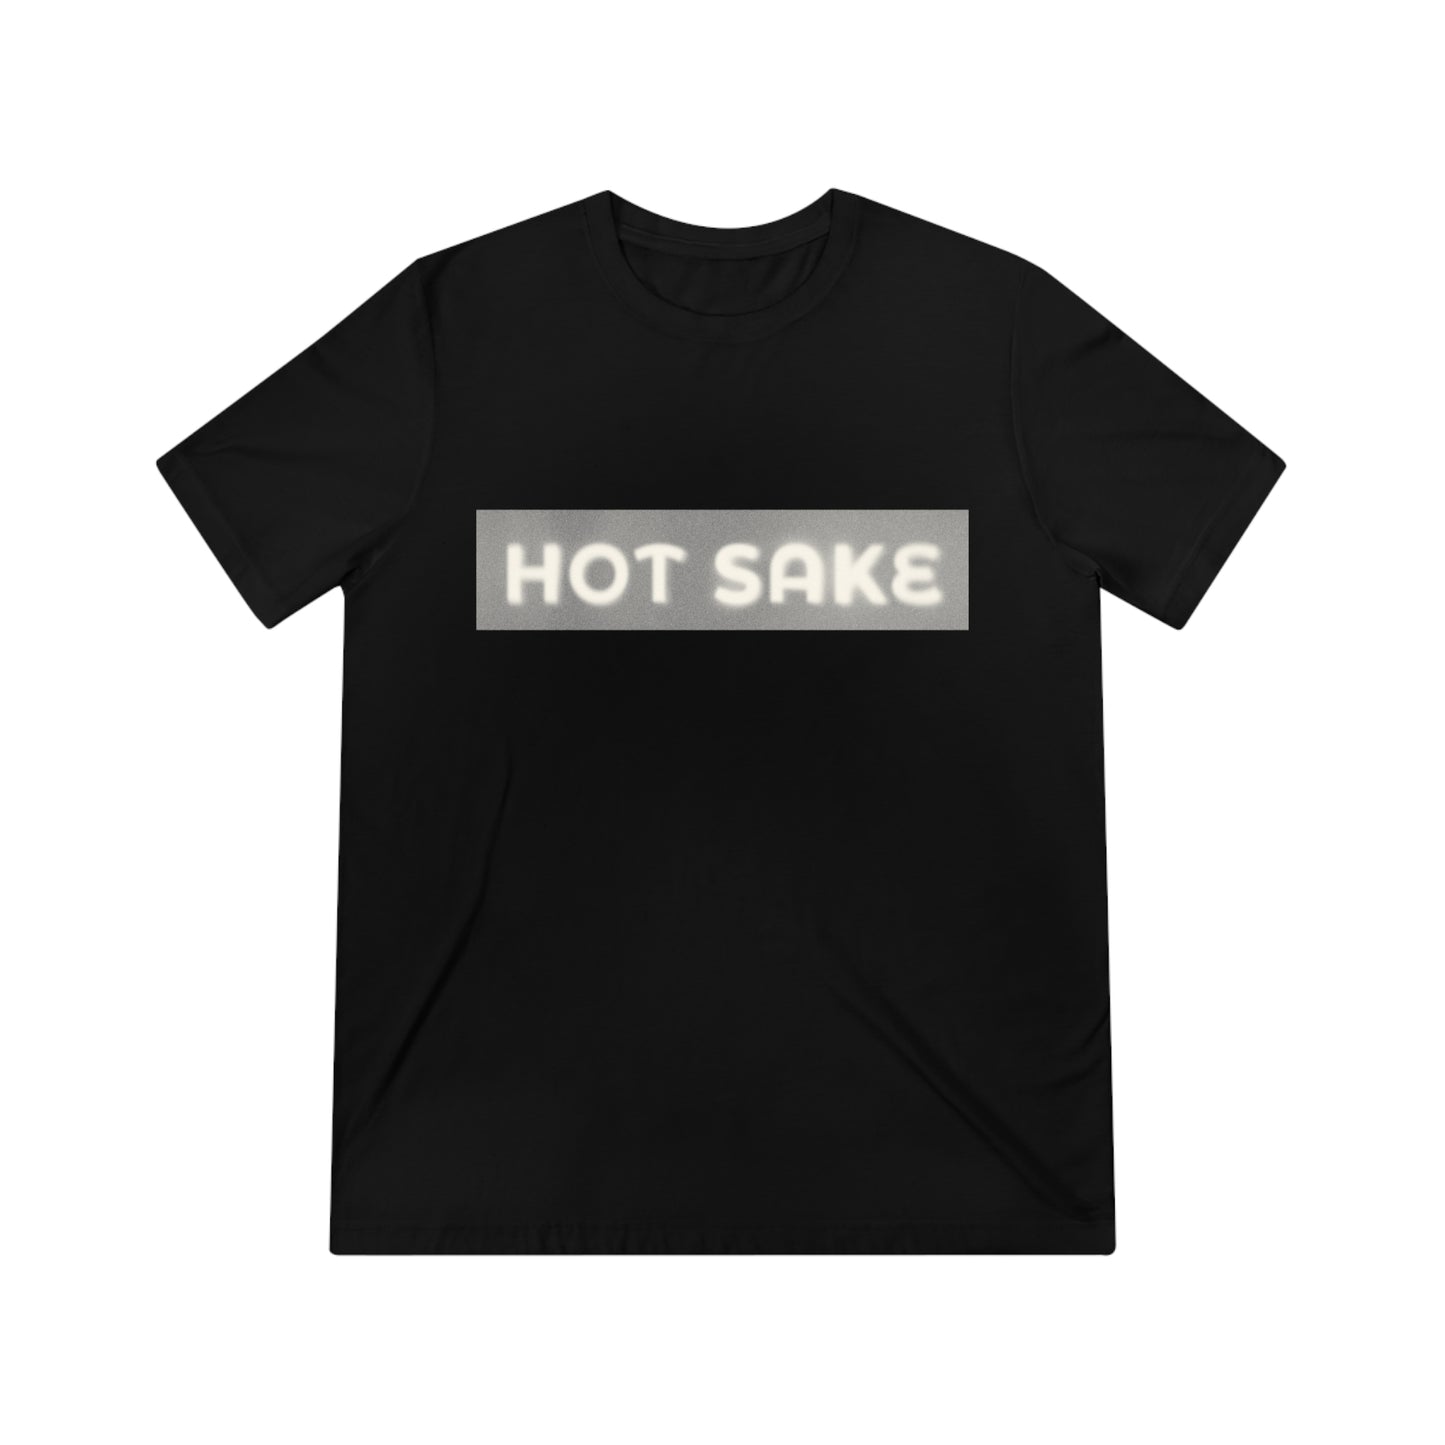 Hot Sake - T-Shirt